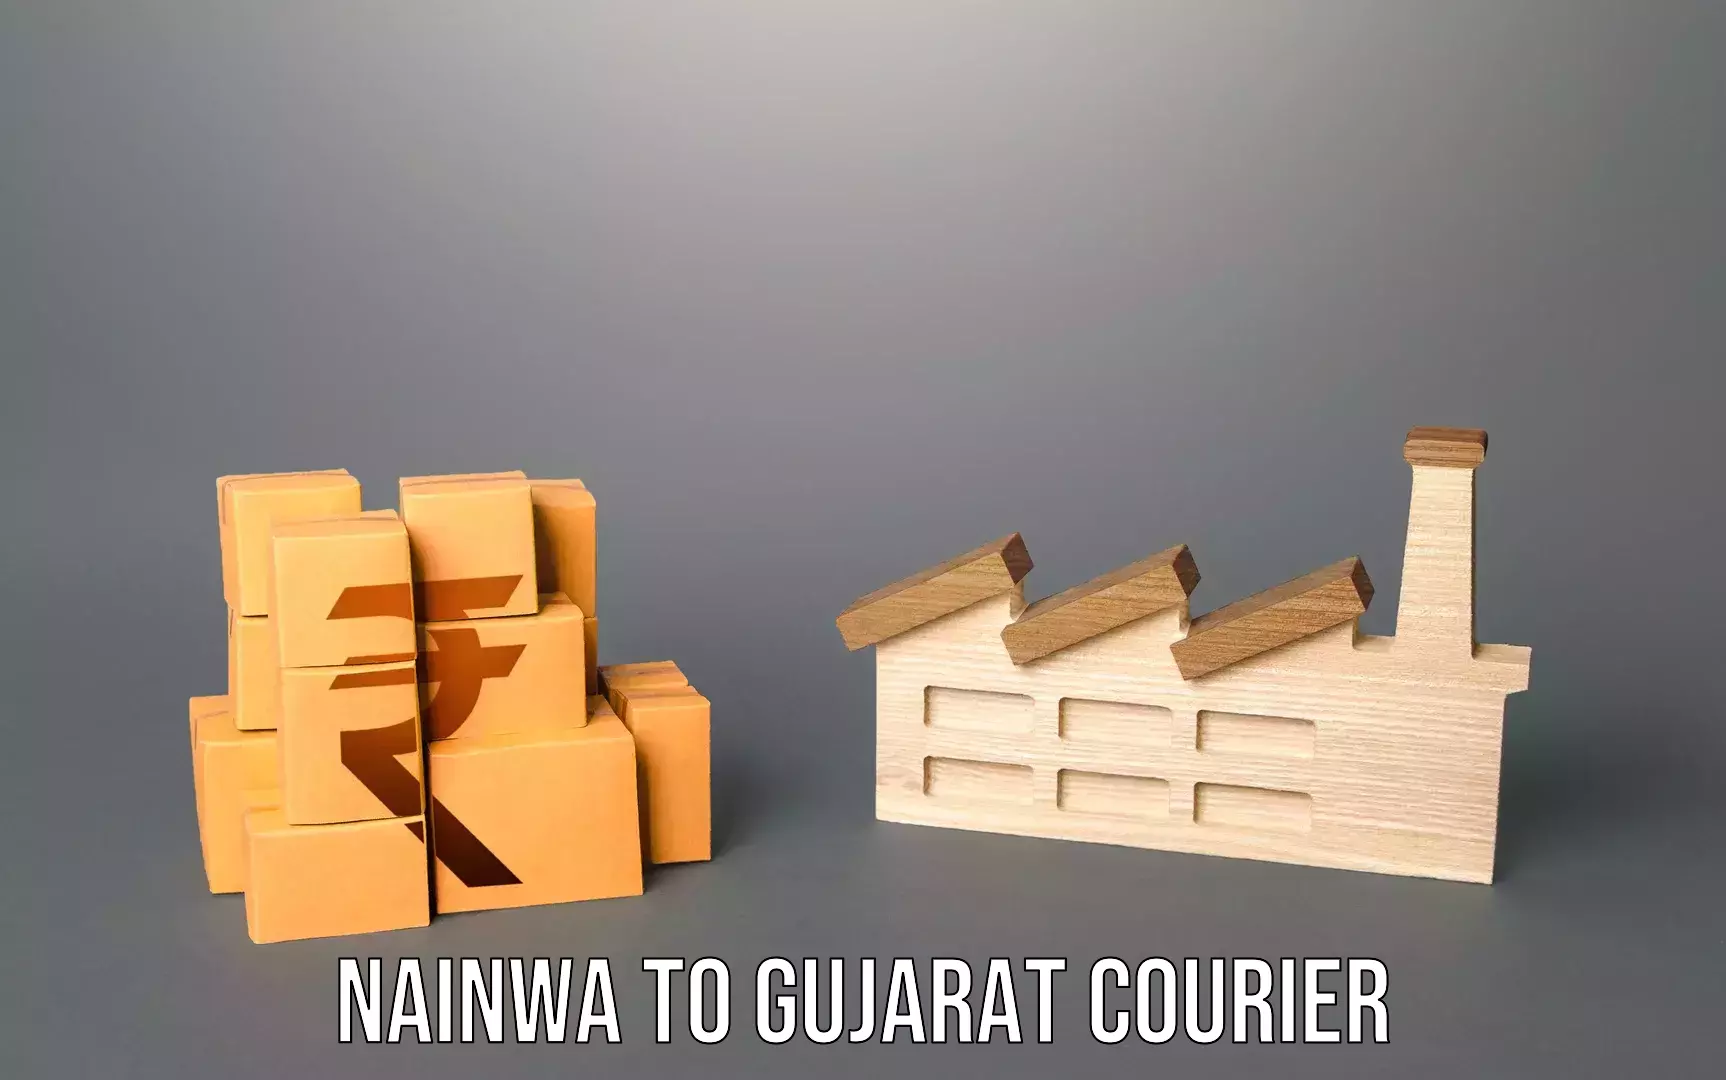 Luggage courier rates calculator Nainwa to Gujarat